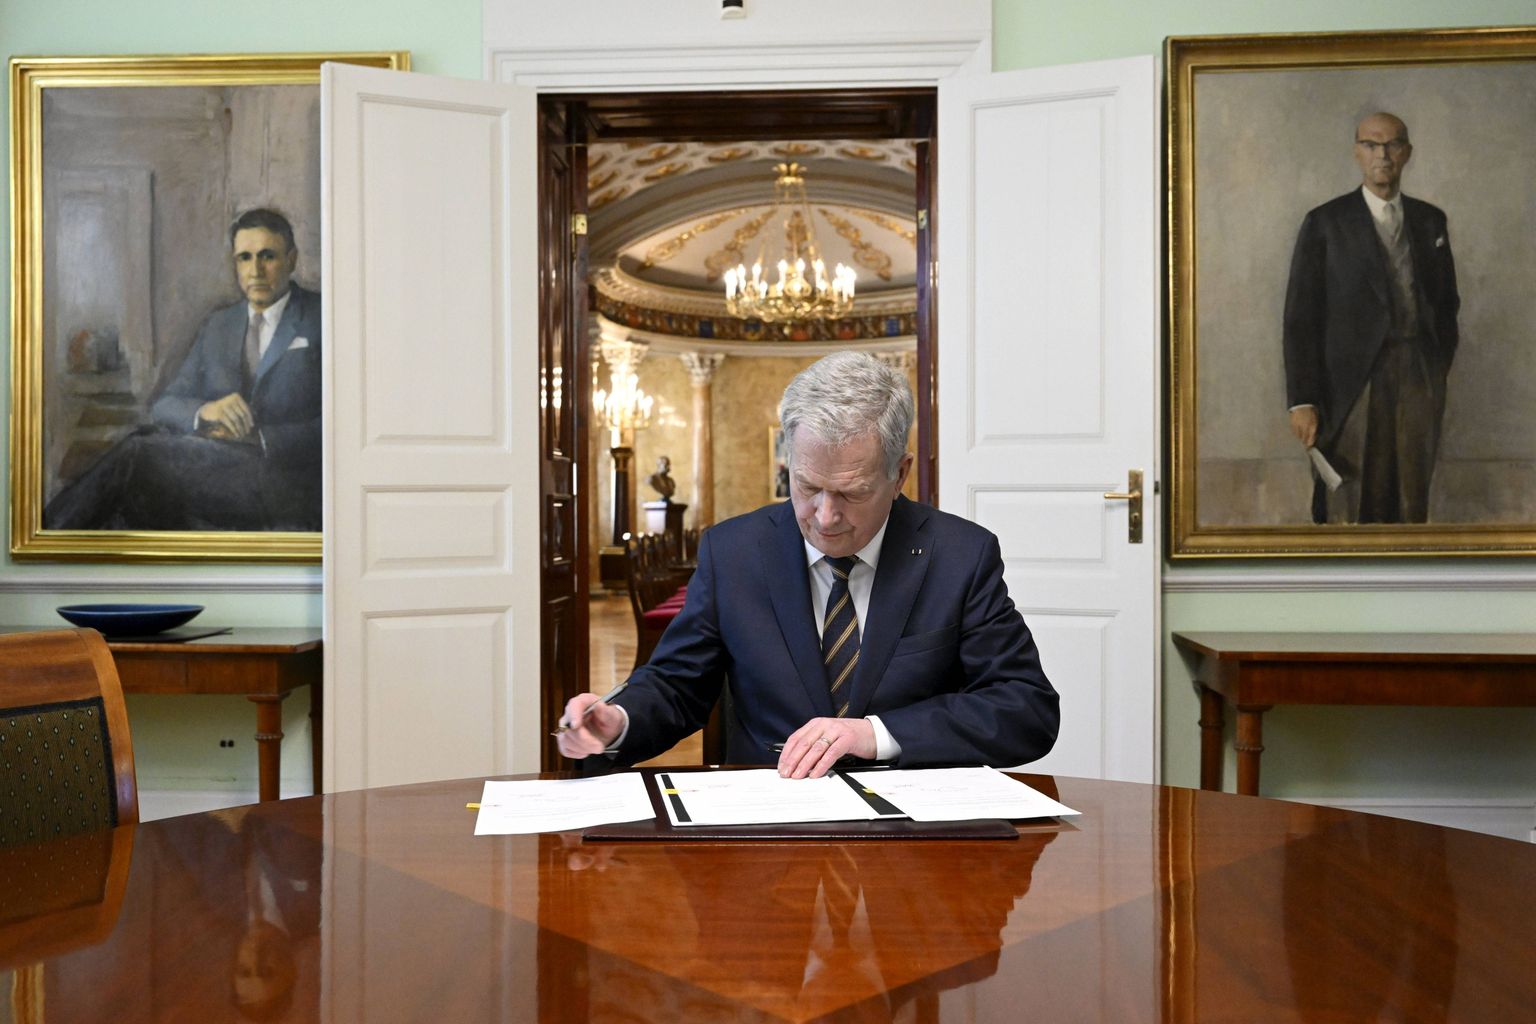 Soome president Sauli Niinistö NATO-ga liitumise eelnõud allkirjastamas.